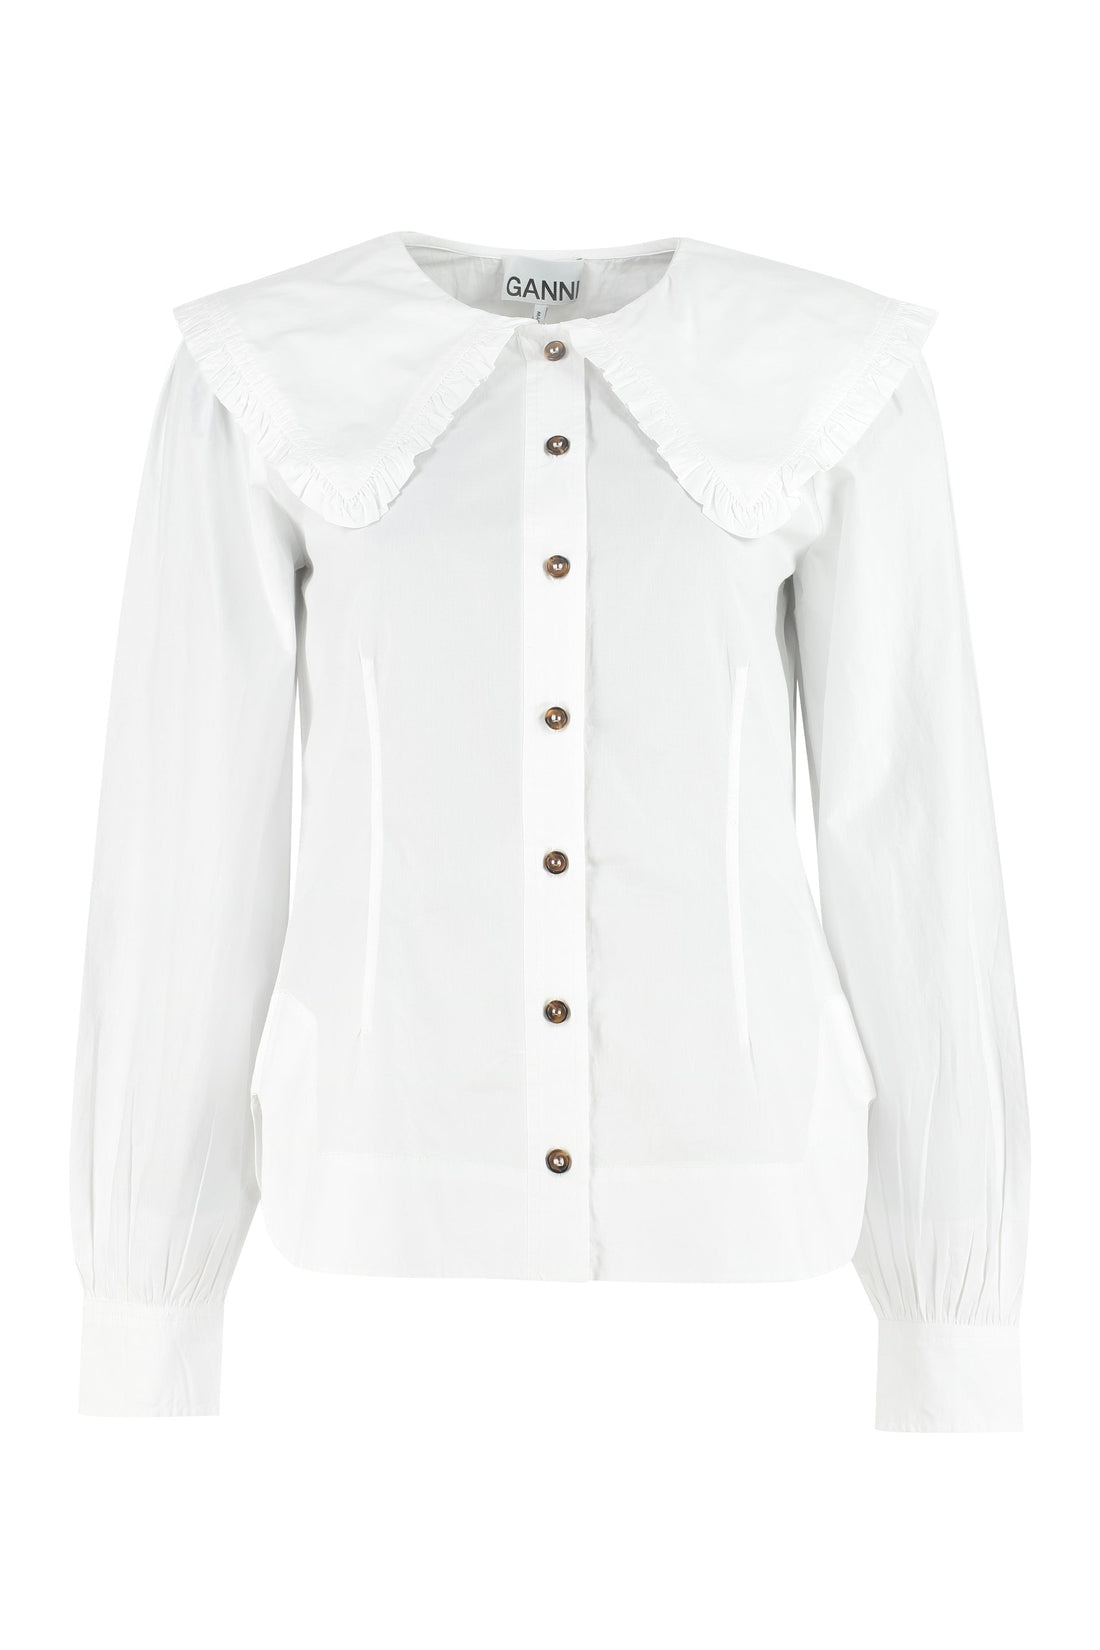 GANNI-OUTLET-SALE-Maxi collar cotton shirt-ARCHIVIST